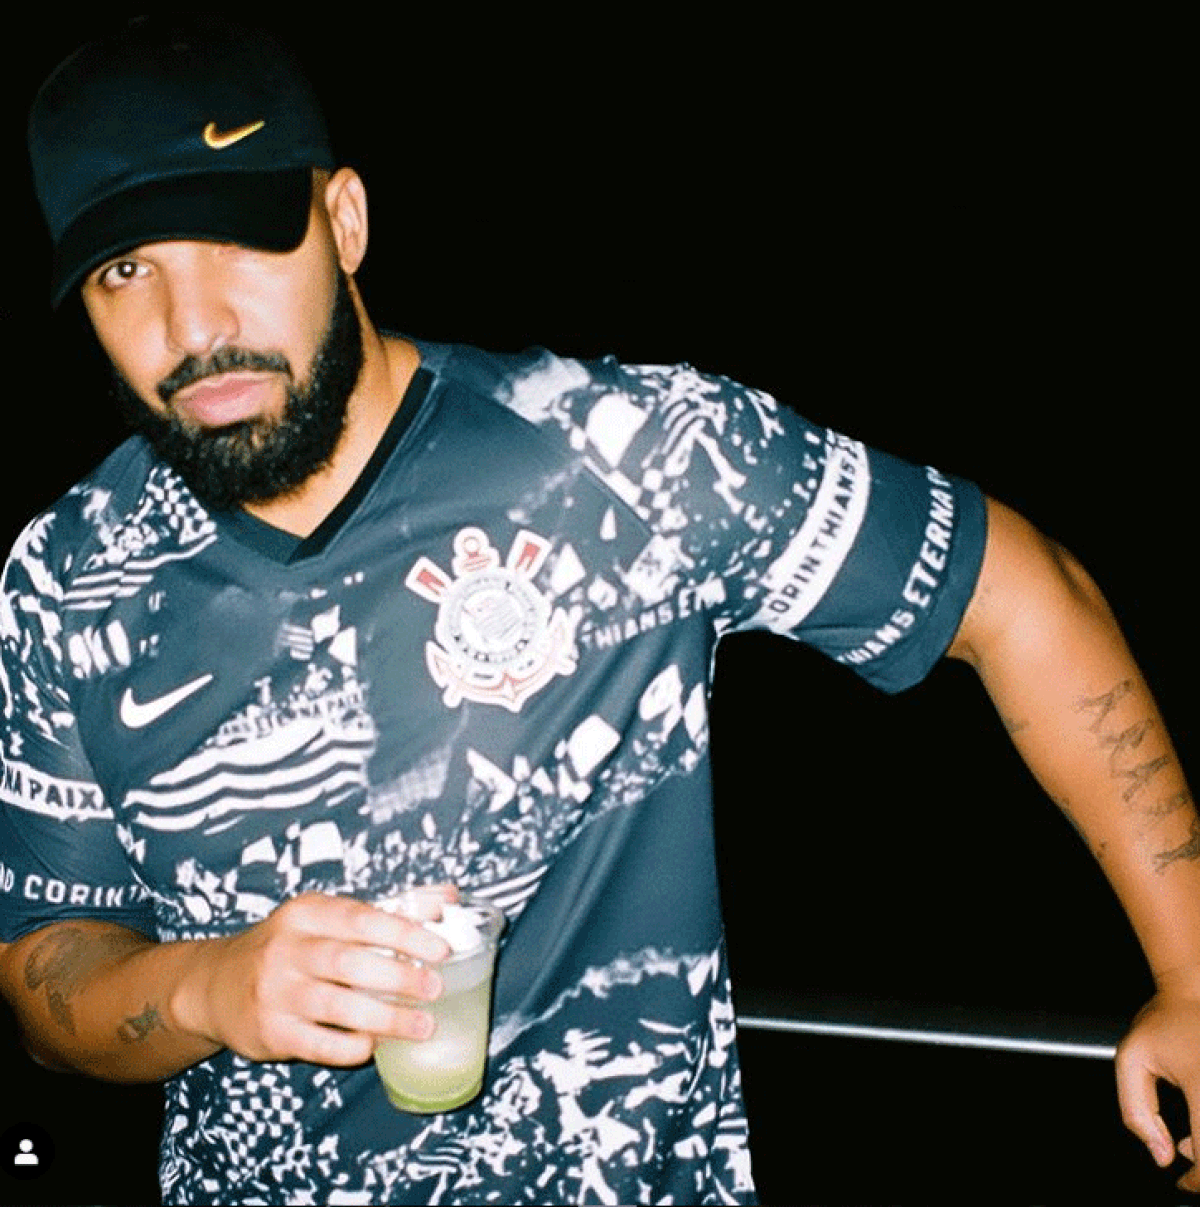 Drake usa camisa do Corinthians e diz que quase causou briga em bar